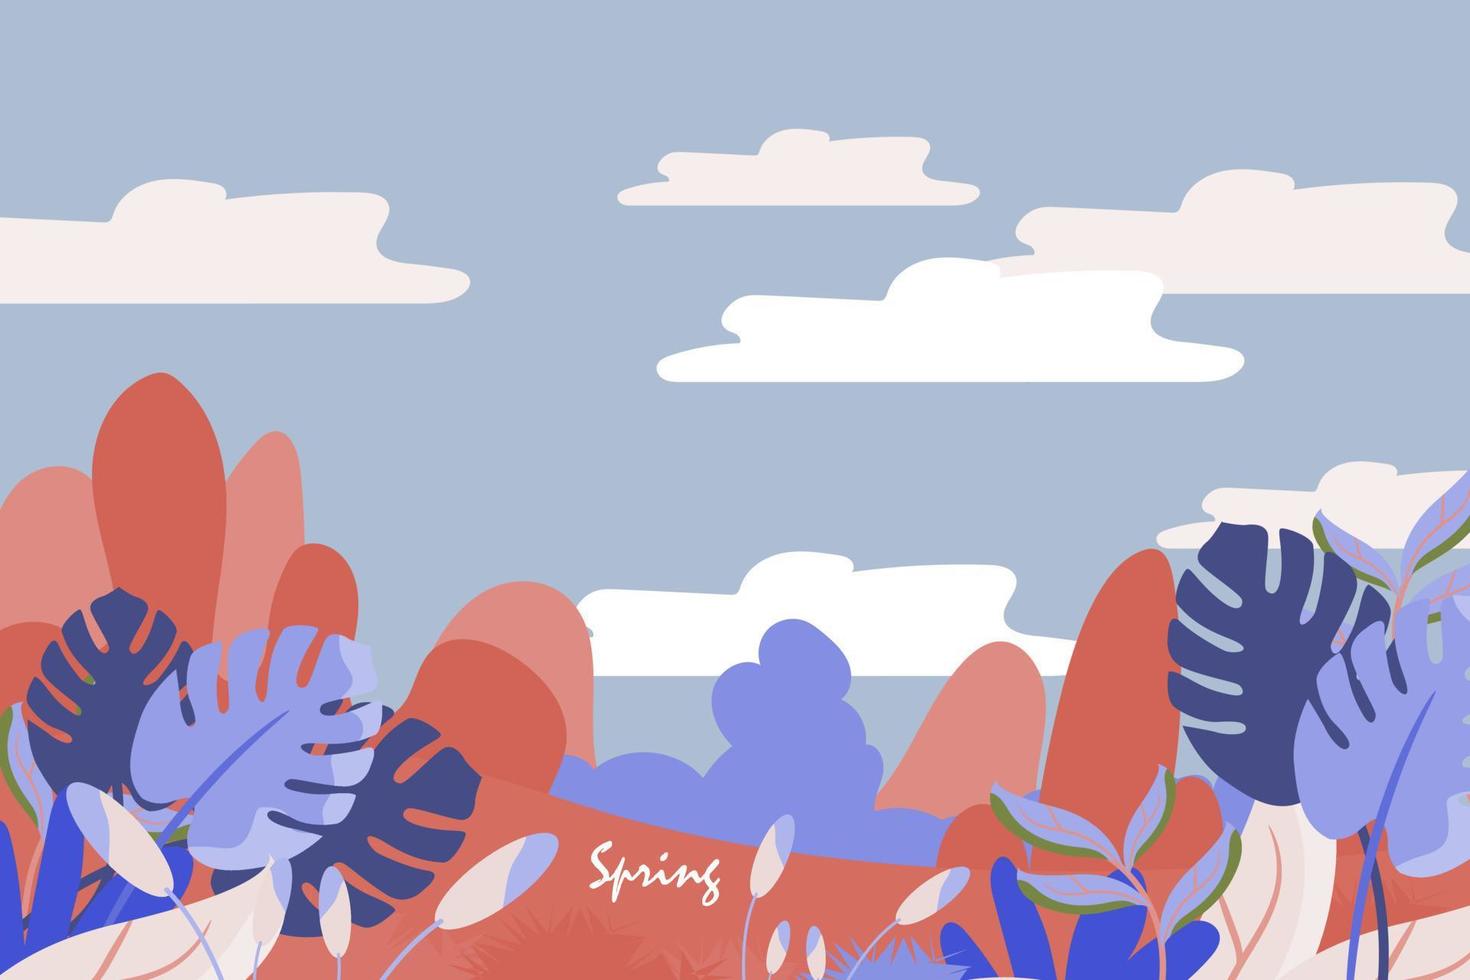 fundo de ambiente de primavera e verão ou design de banner com lindas flores, folhas, montanha, paisagem e elemento do céu. ilustração vetorial eps10 vetor